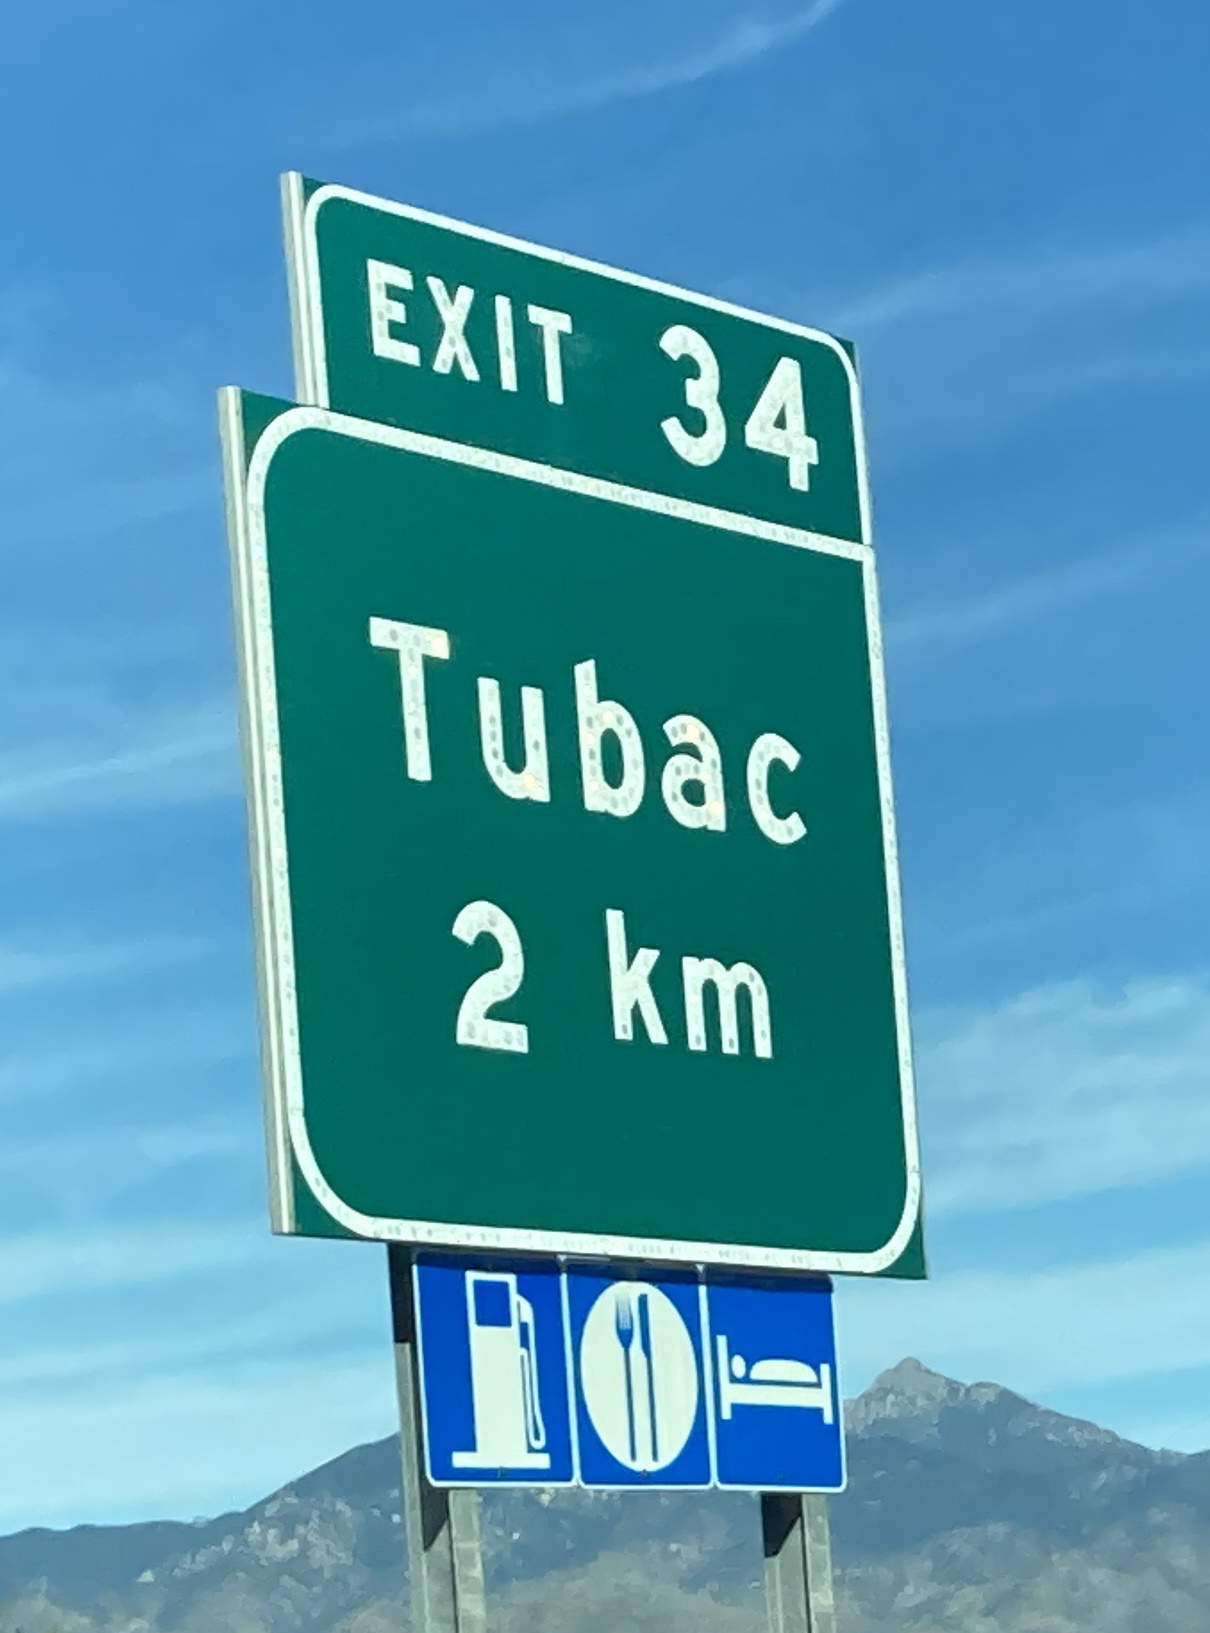 I19N/Tubac